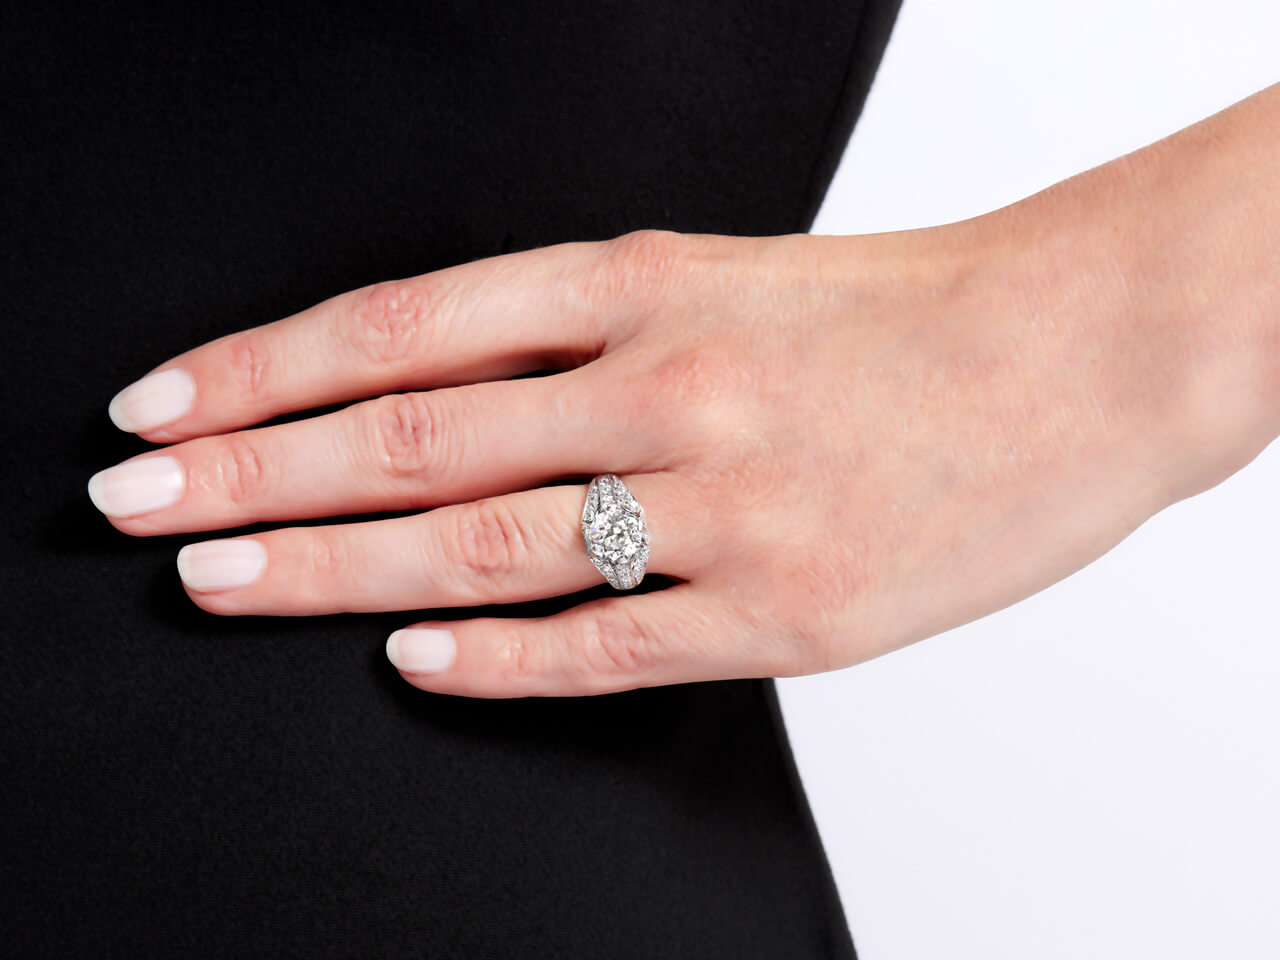 Art Deco Diamond Ring, 2.28 Carat J/VS-2, in Platinum